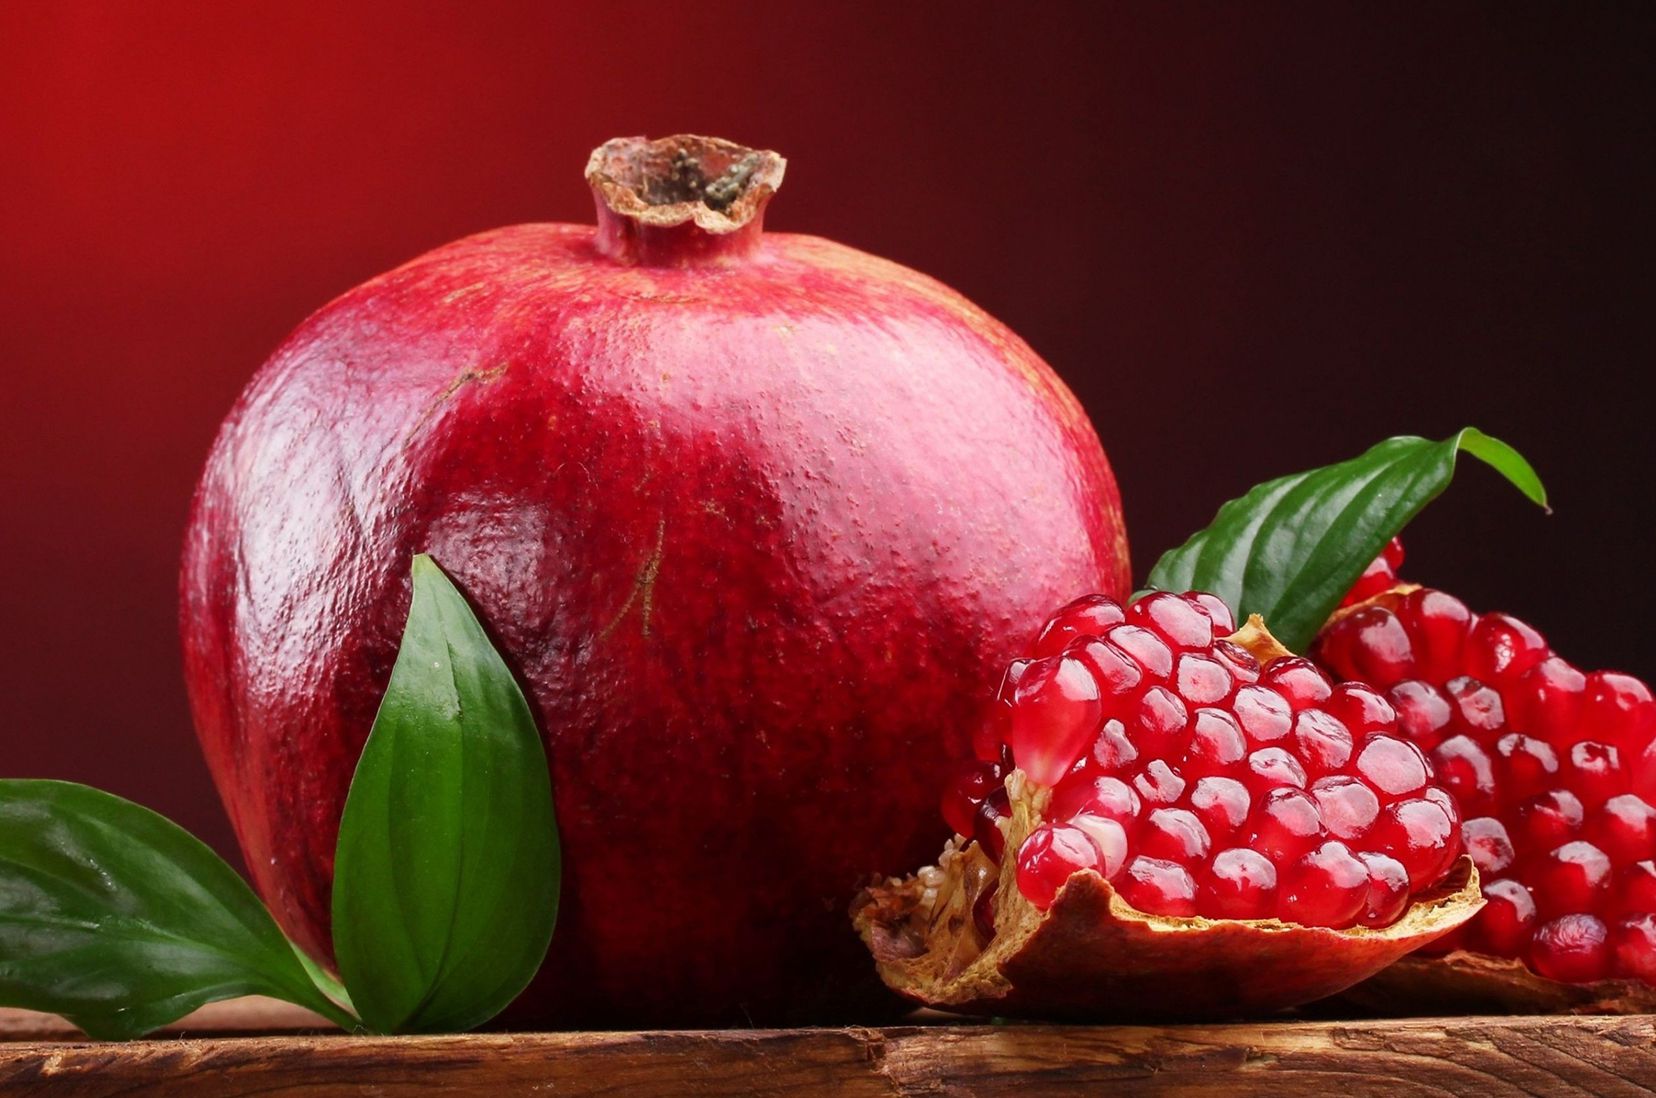 Pomegranateari buruzko amets baten interpretazioa